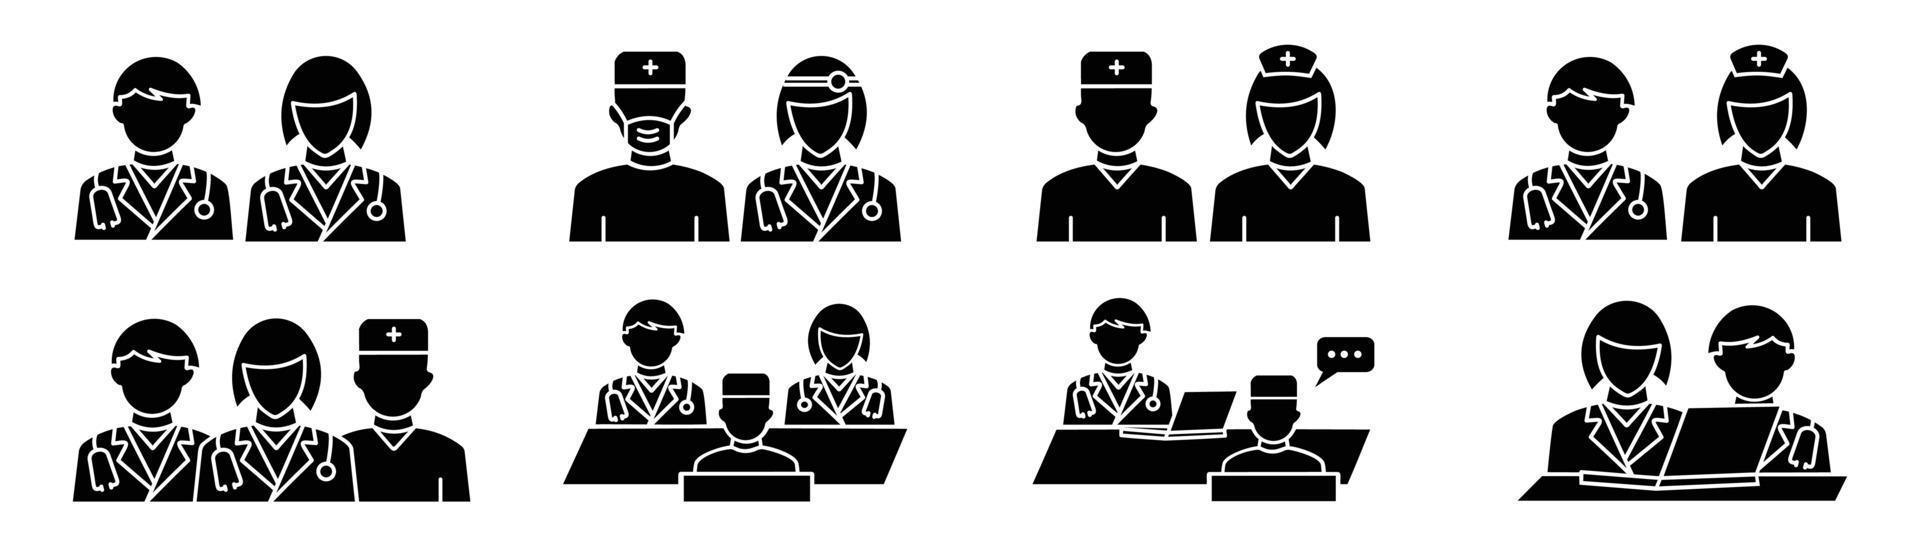 illustration vectorielle du personnel médical, icônes de médecin à plat définies sur le vecteur de style de ligne. icône de médecin et d'infirmière définie dans le style de ligne.